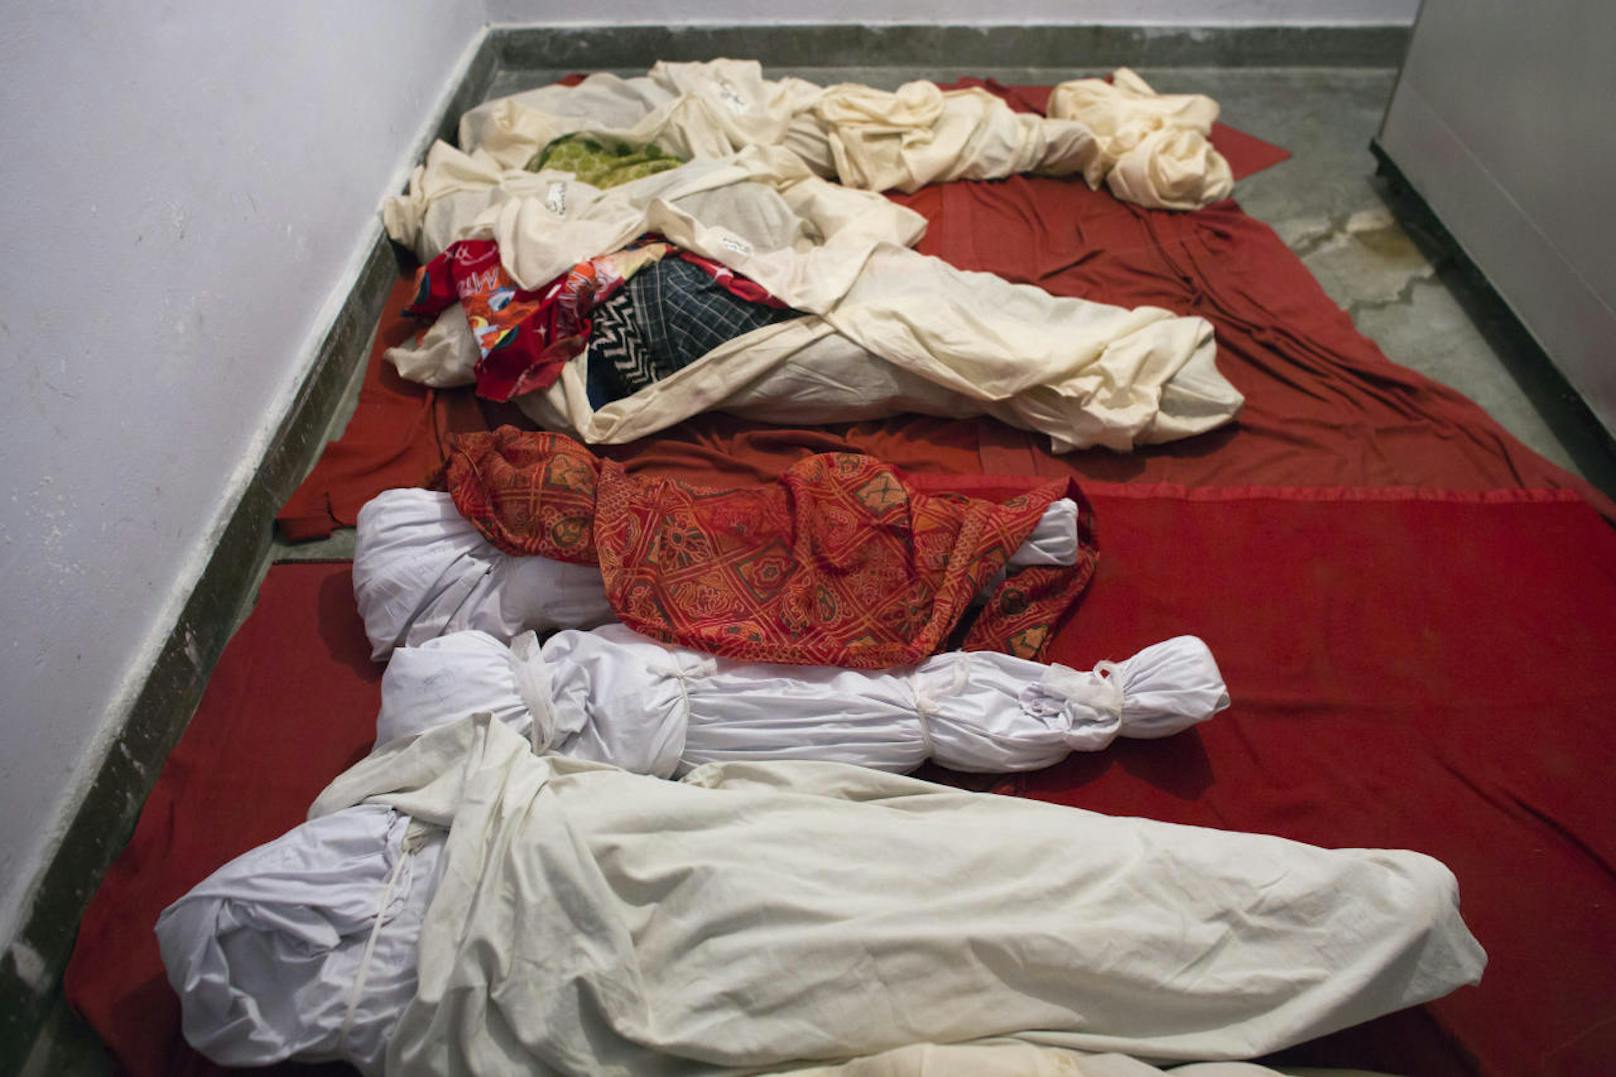 Die Toten wurden auf dem Betonboden der Nurpur-Leichenhalle gelegt.